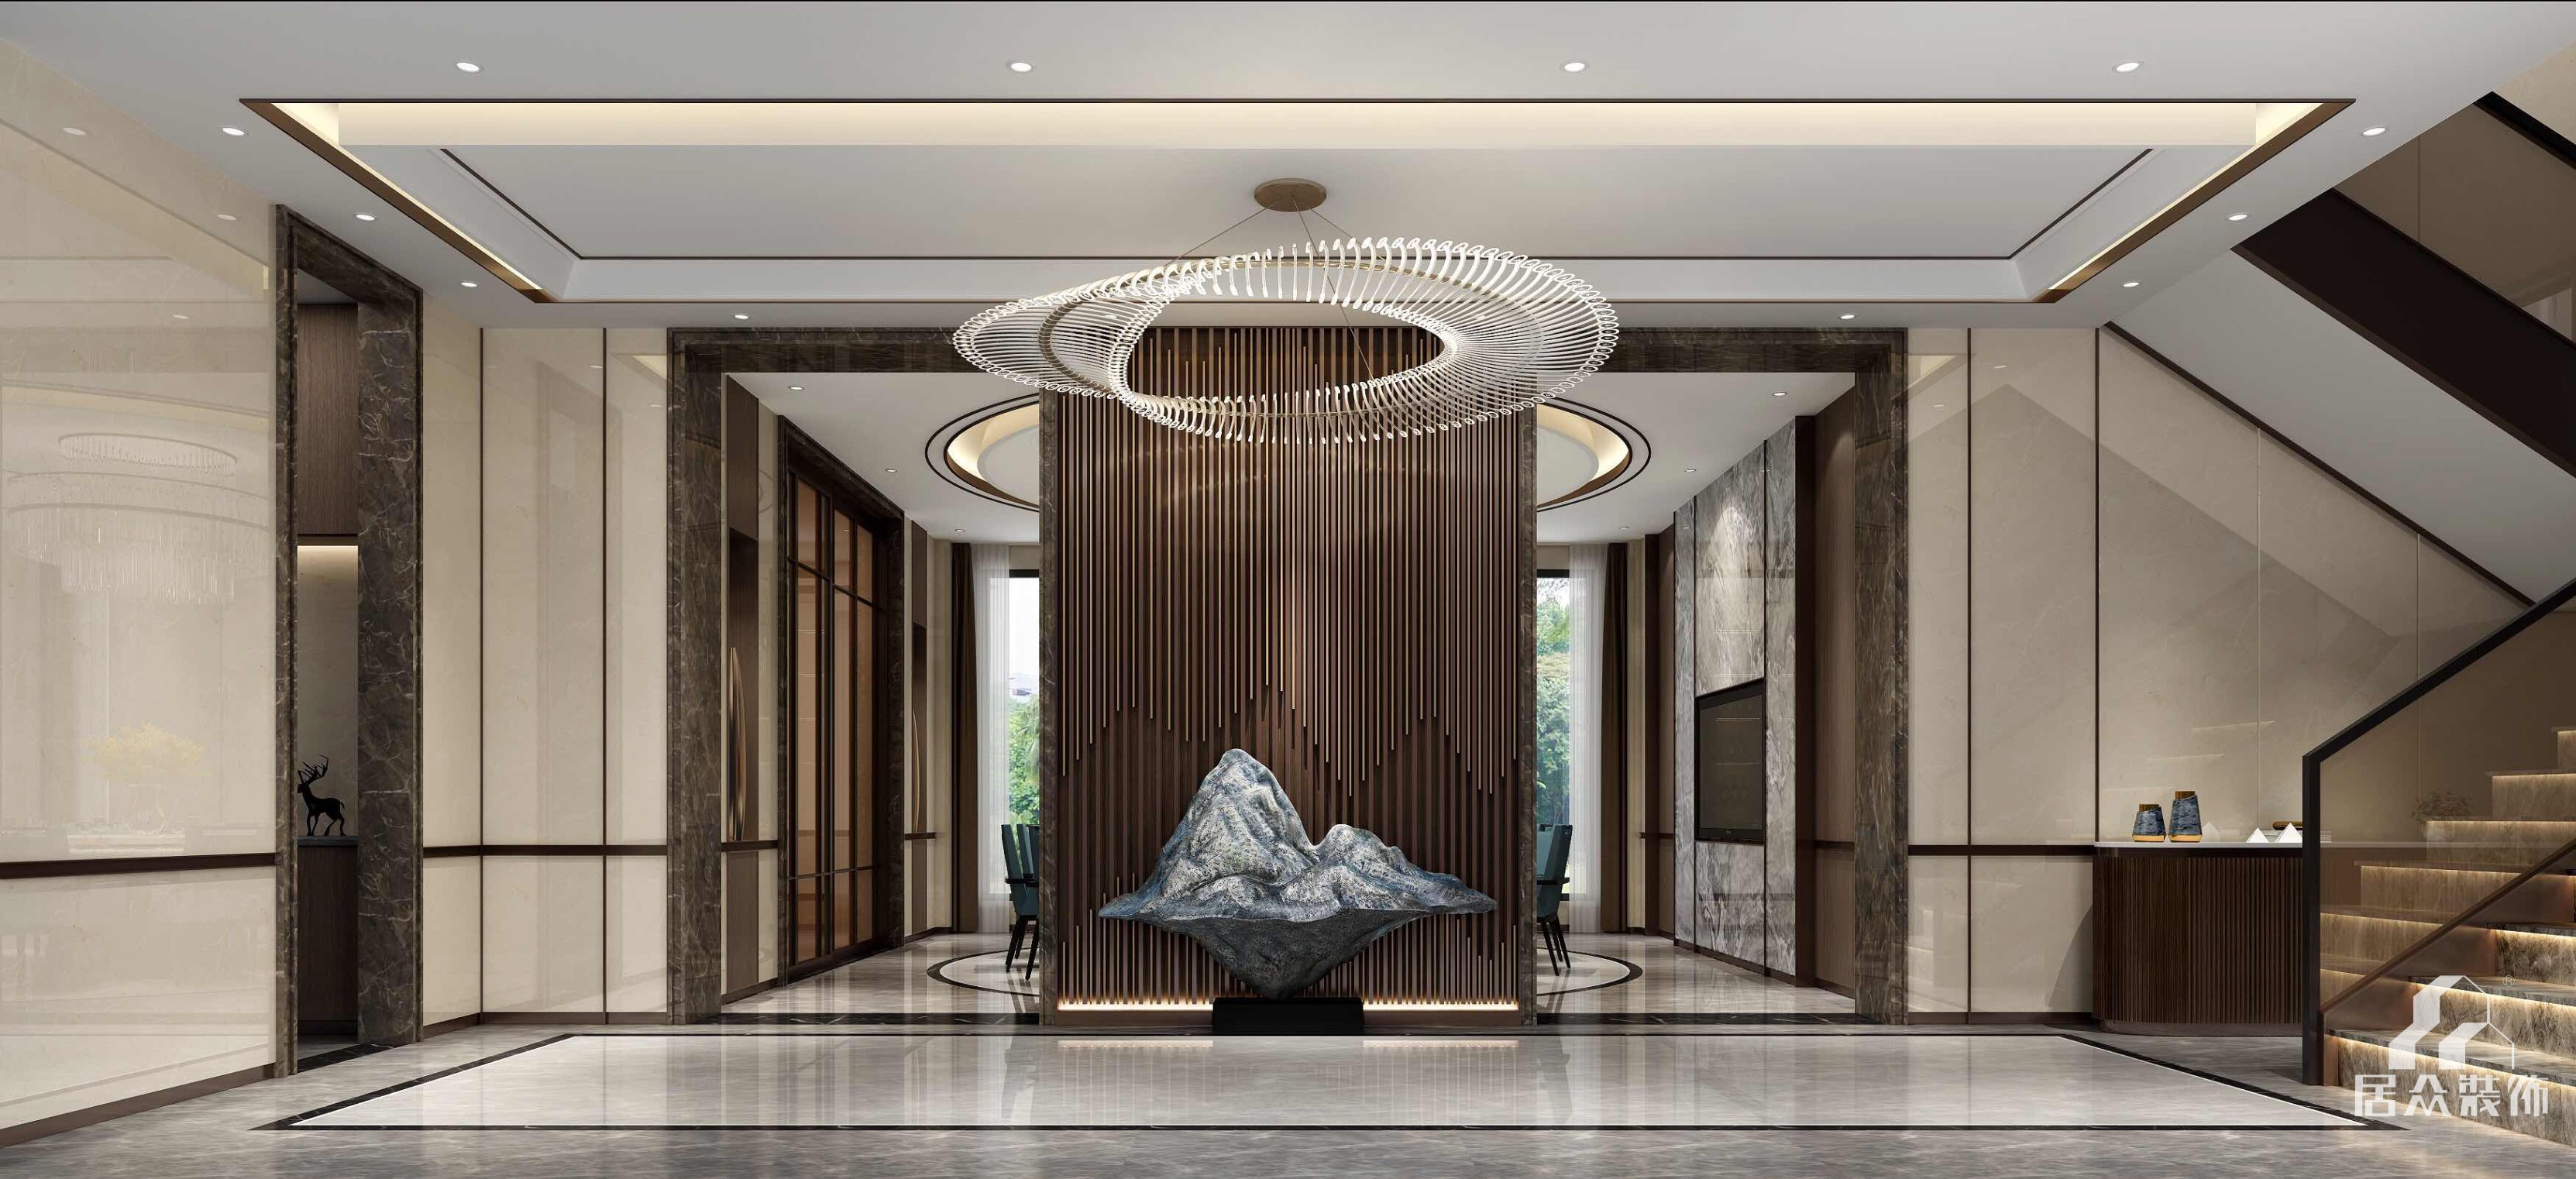 新世纪颐龙湾1000平方米中式风格别墅装修效果图